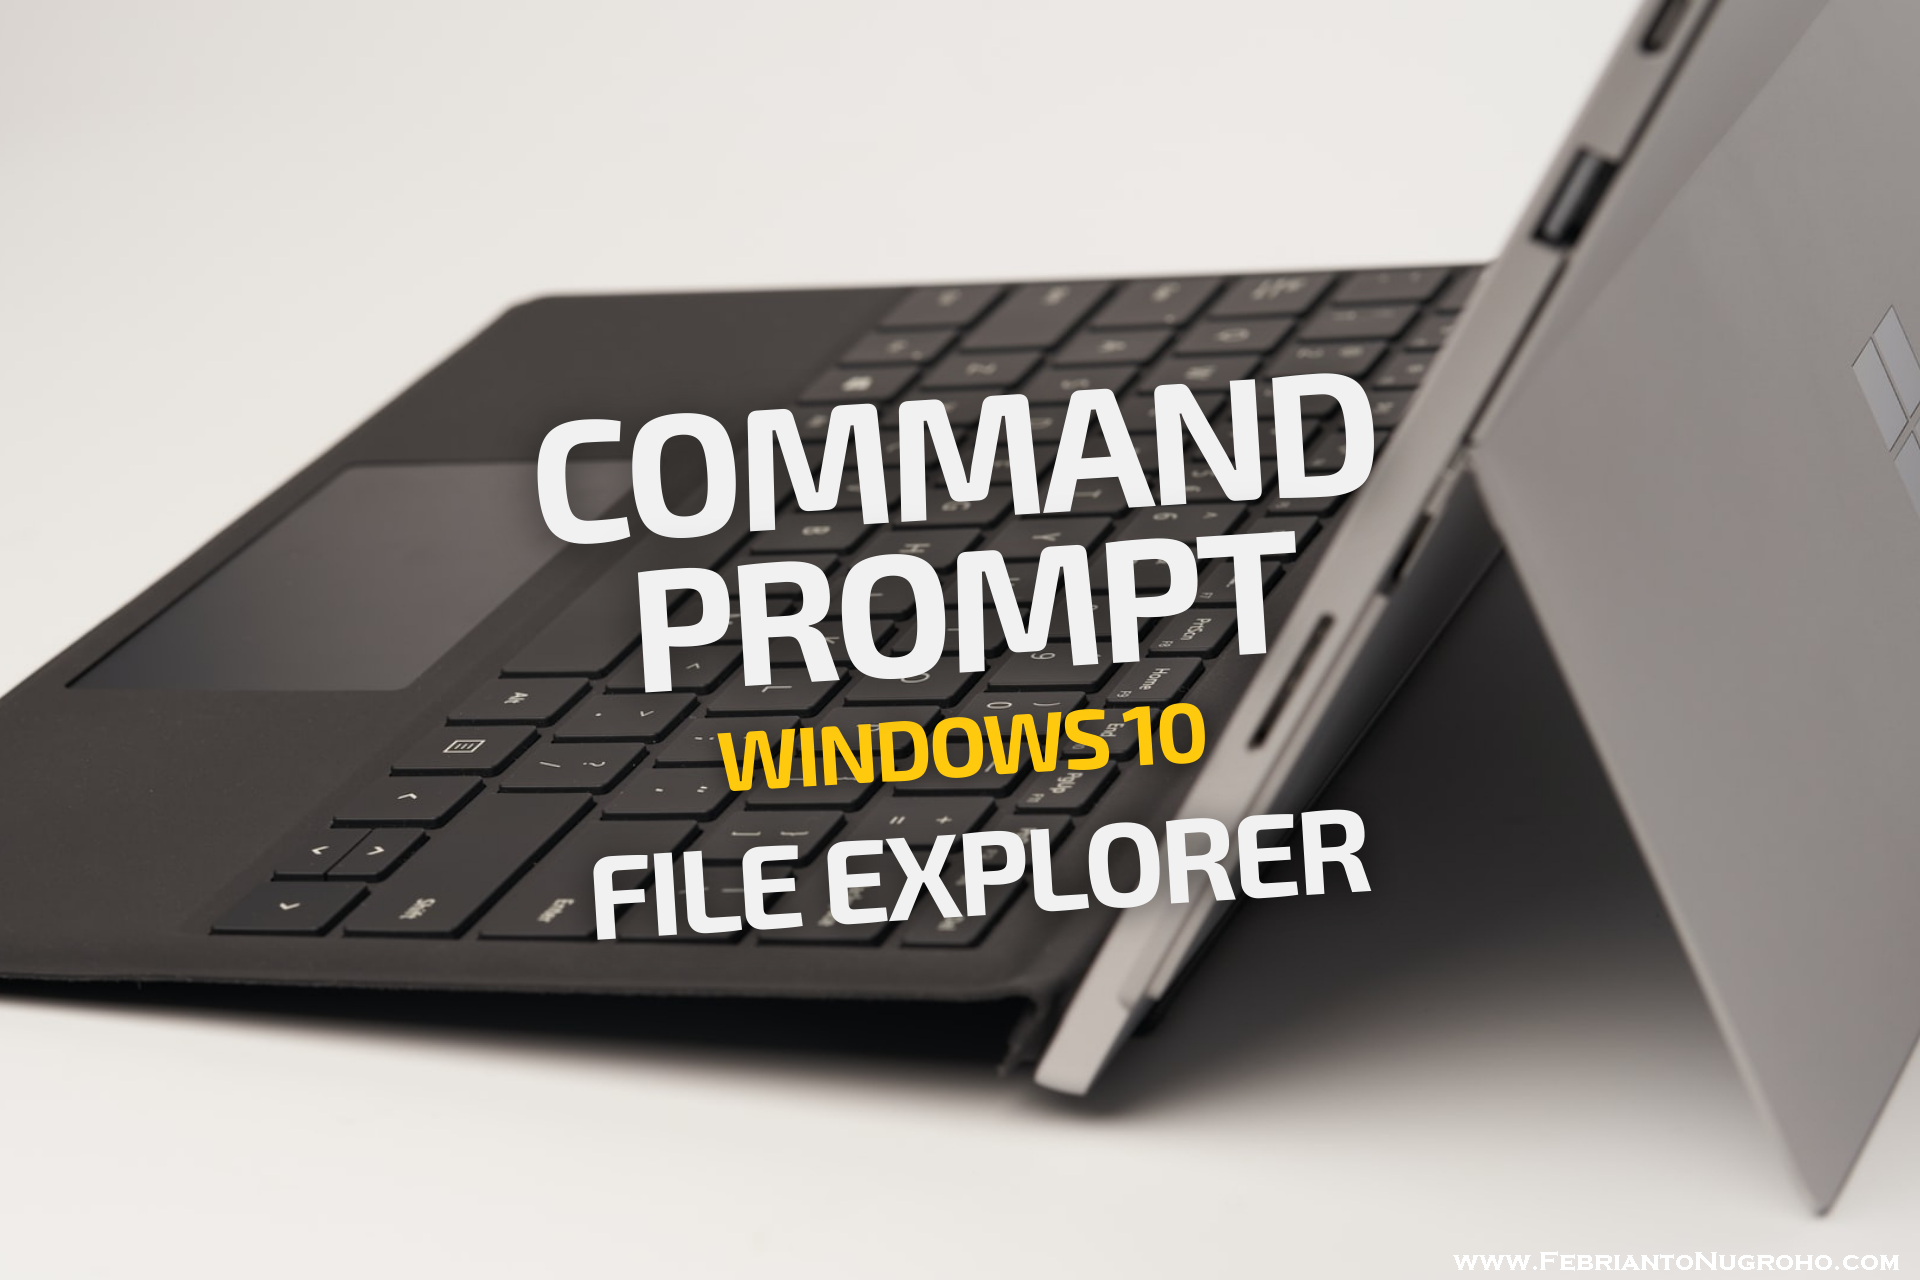 Membuka Command Prompt di Windows 10 via File Explorer